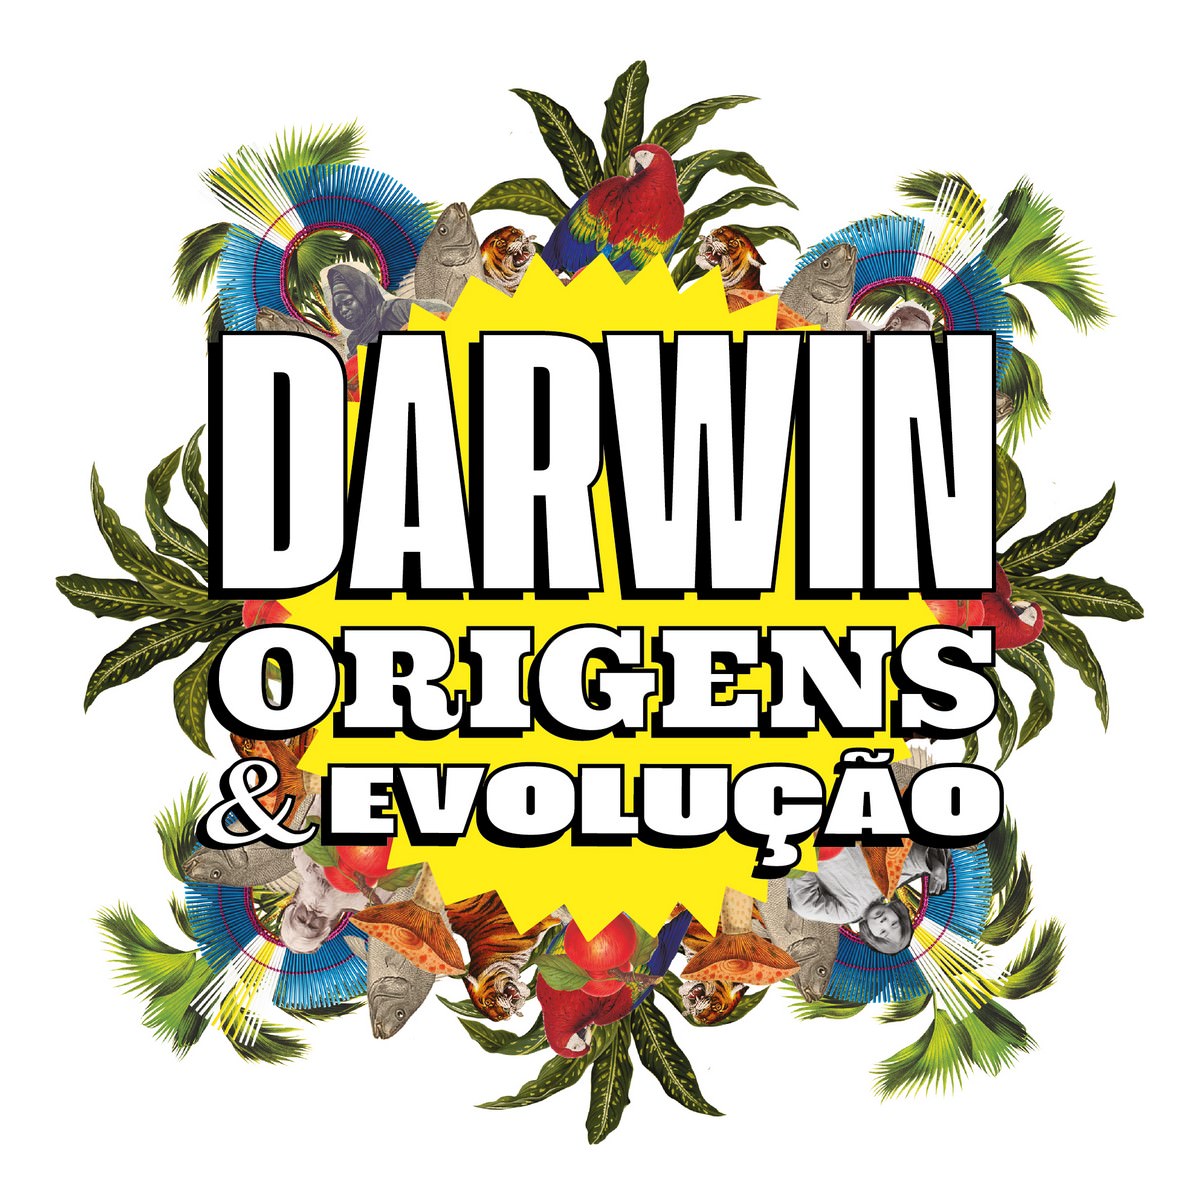 תערוכה "דרווין - מקורות & אבולוציה & quot;, בקרוב. גילוי.